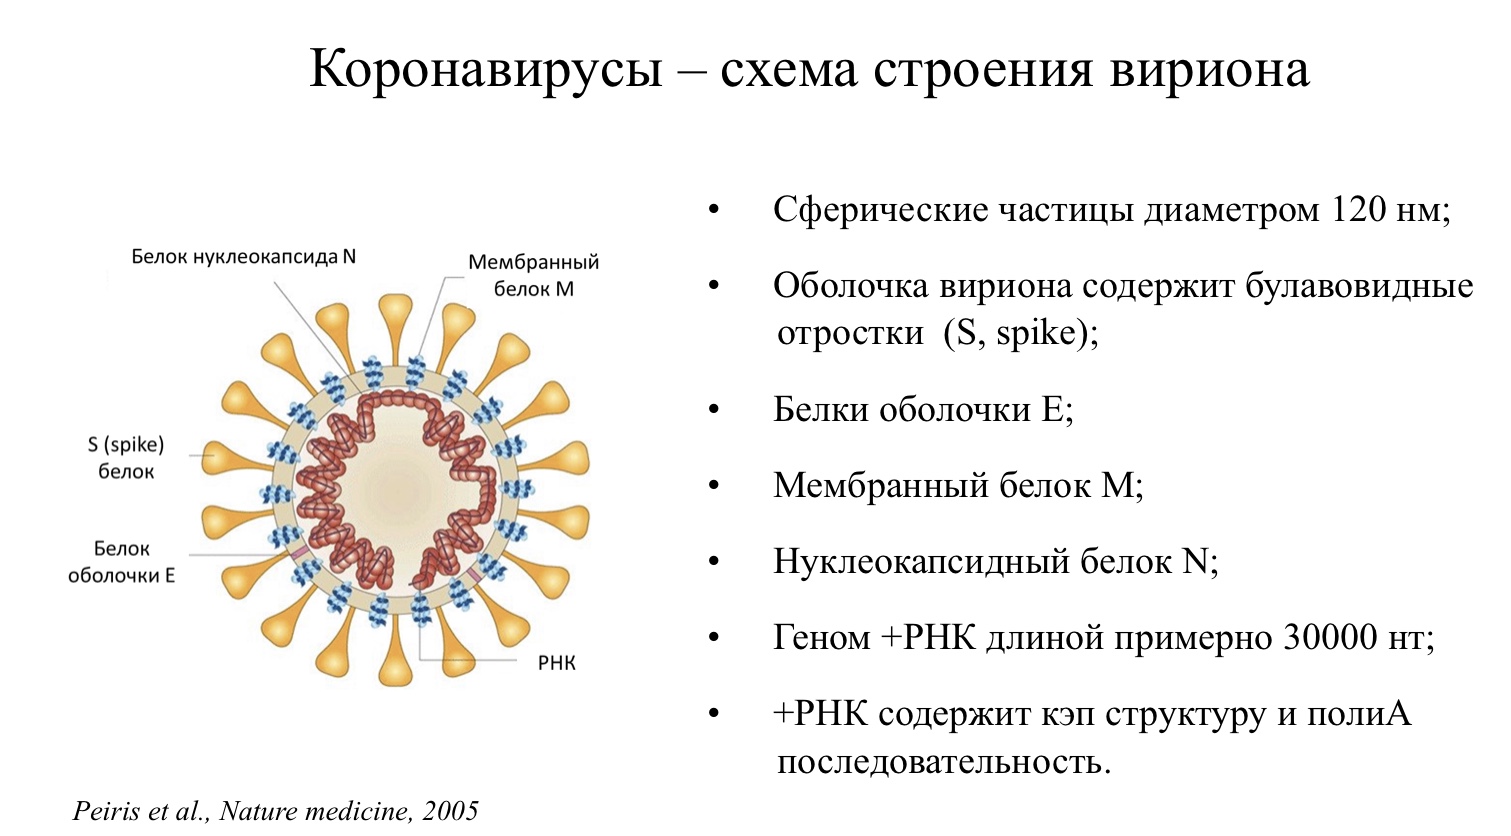 Короновирусная инфекция какая. Коронавирус строение вируса. Строение вируса коронавируса Covid 19. Коронавирус строение Covid 19. Строение коронавируса Covid-19 схема.